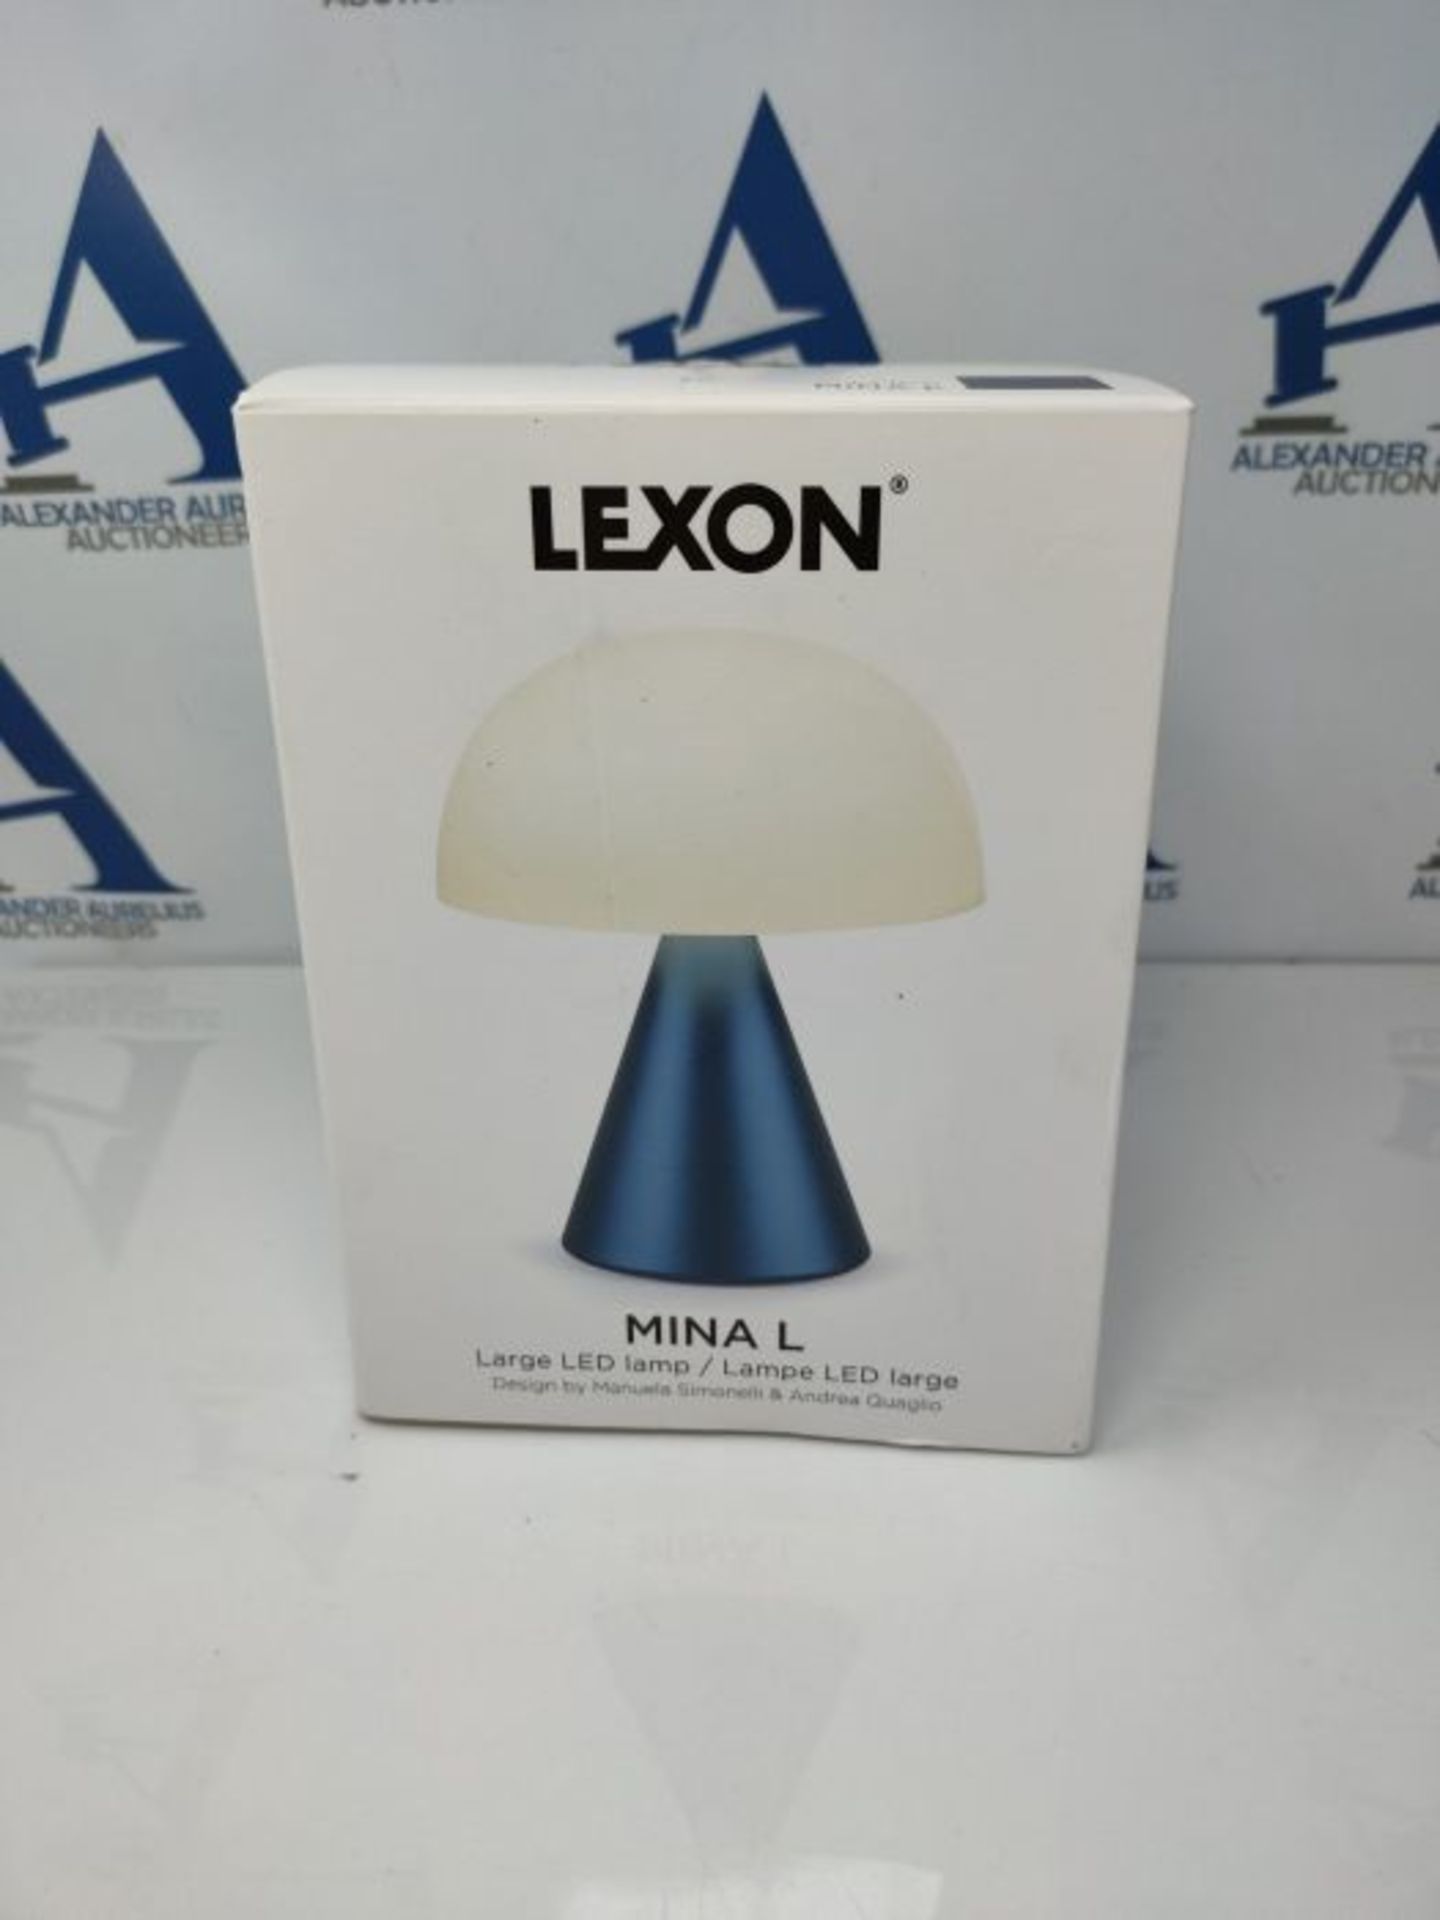 Lexon Mina L Large LED Portable Lamp - Dark Blue - Image 2 of 3